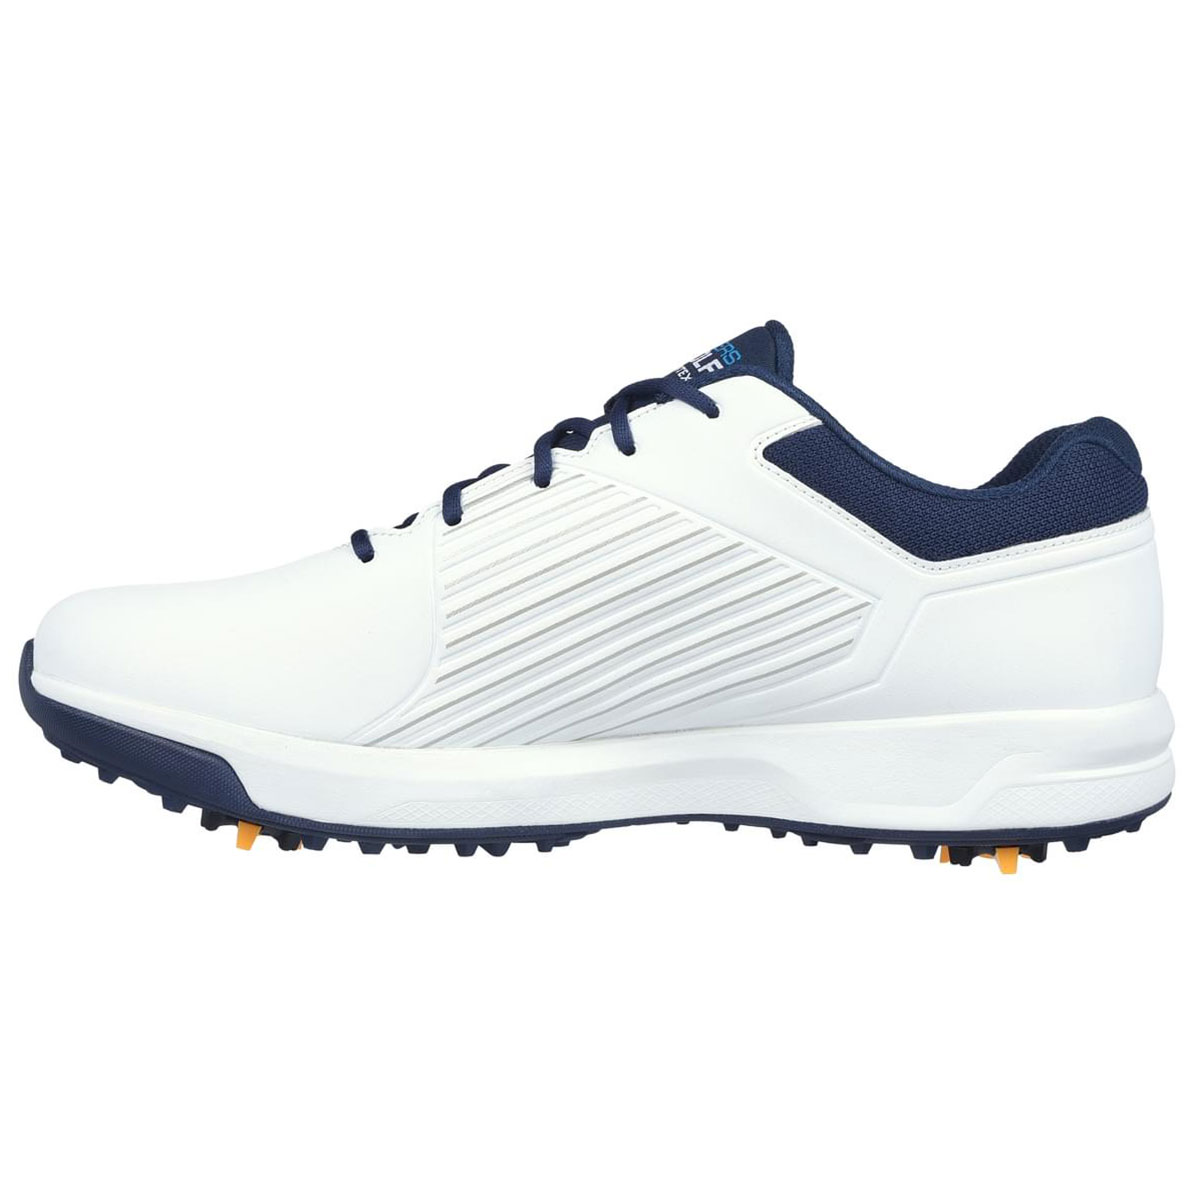 Skechers Men's GO GOLF Elite Vortex Waterproof Spiked Golf Shoes from ...